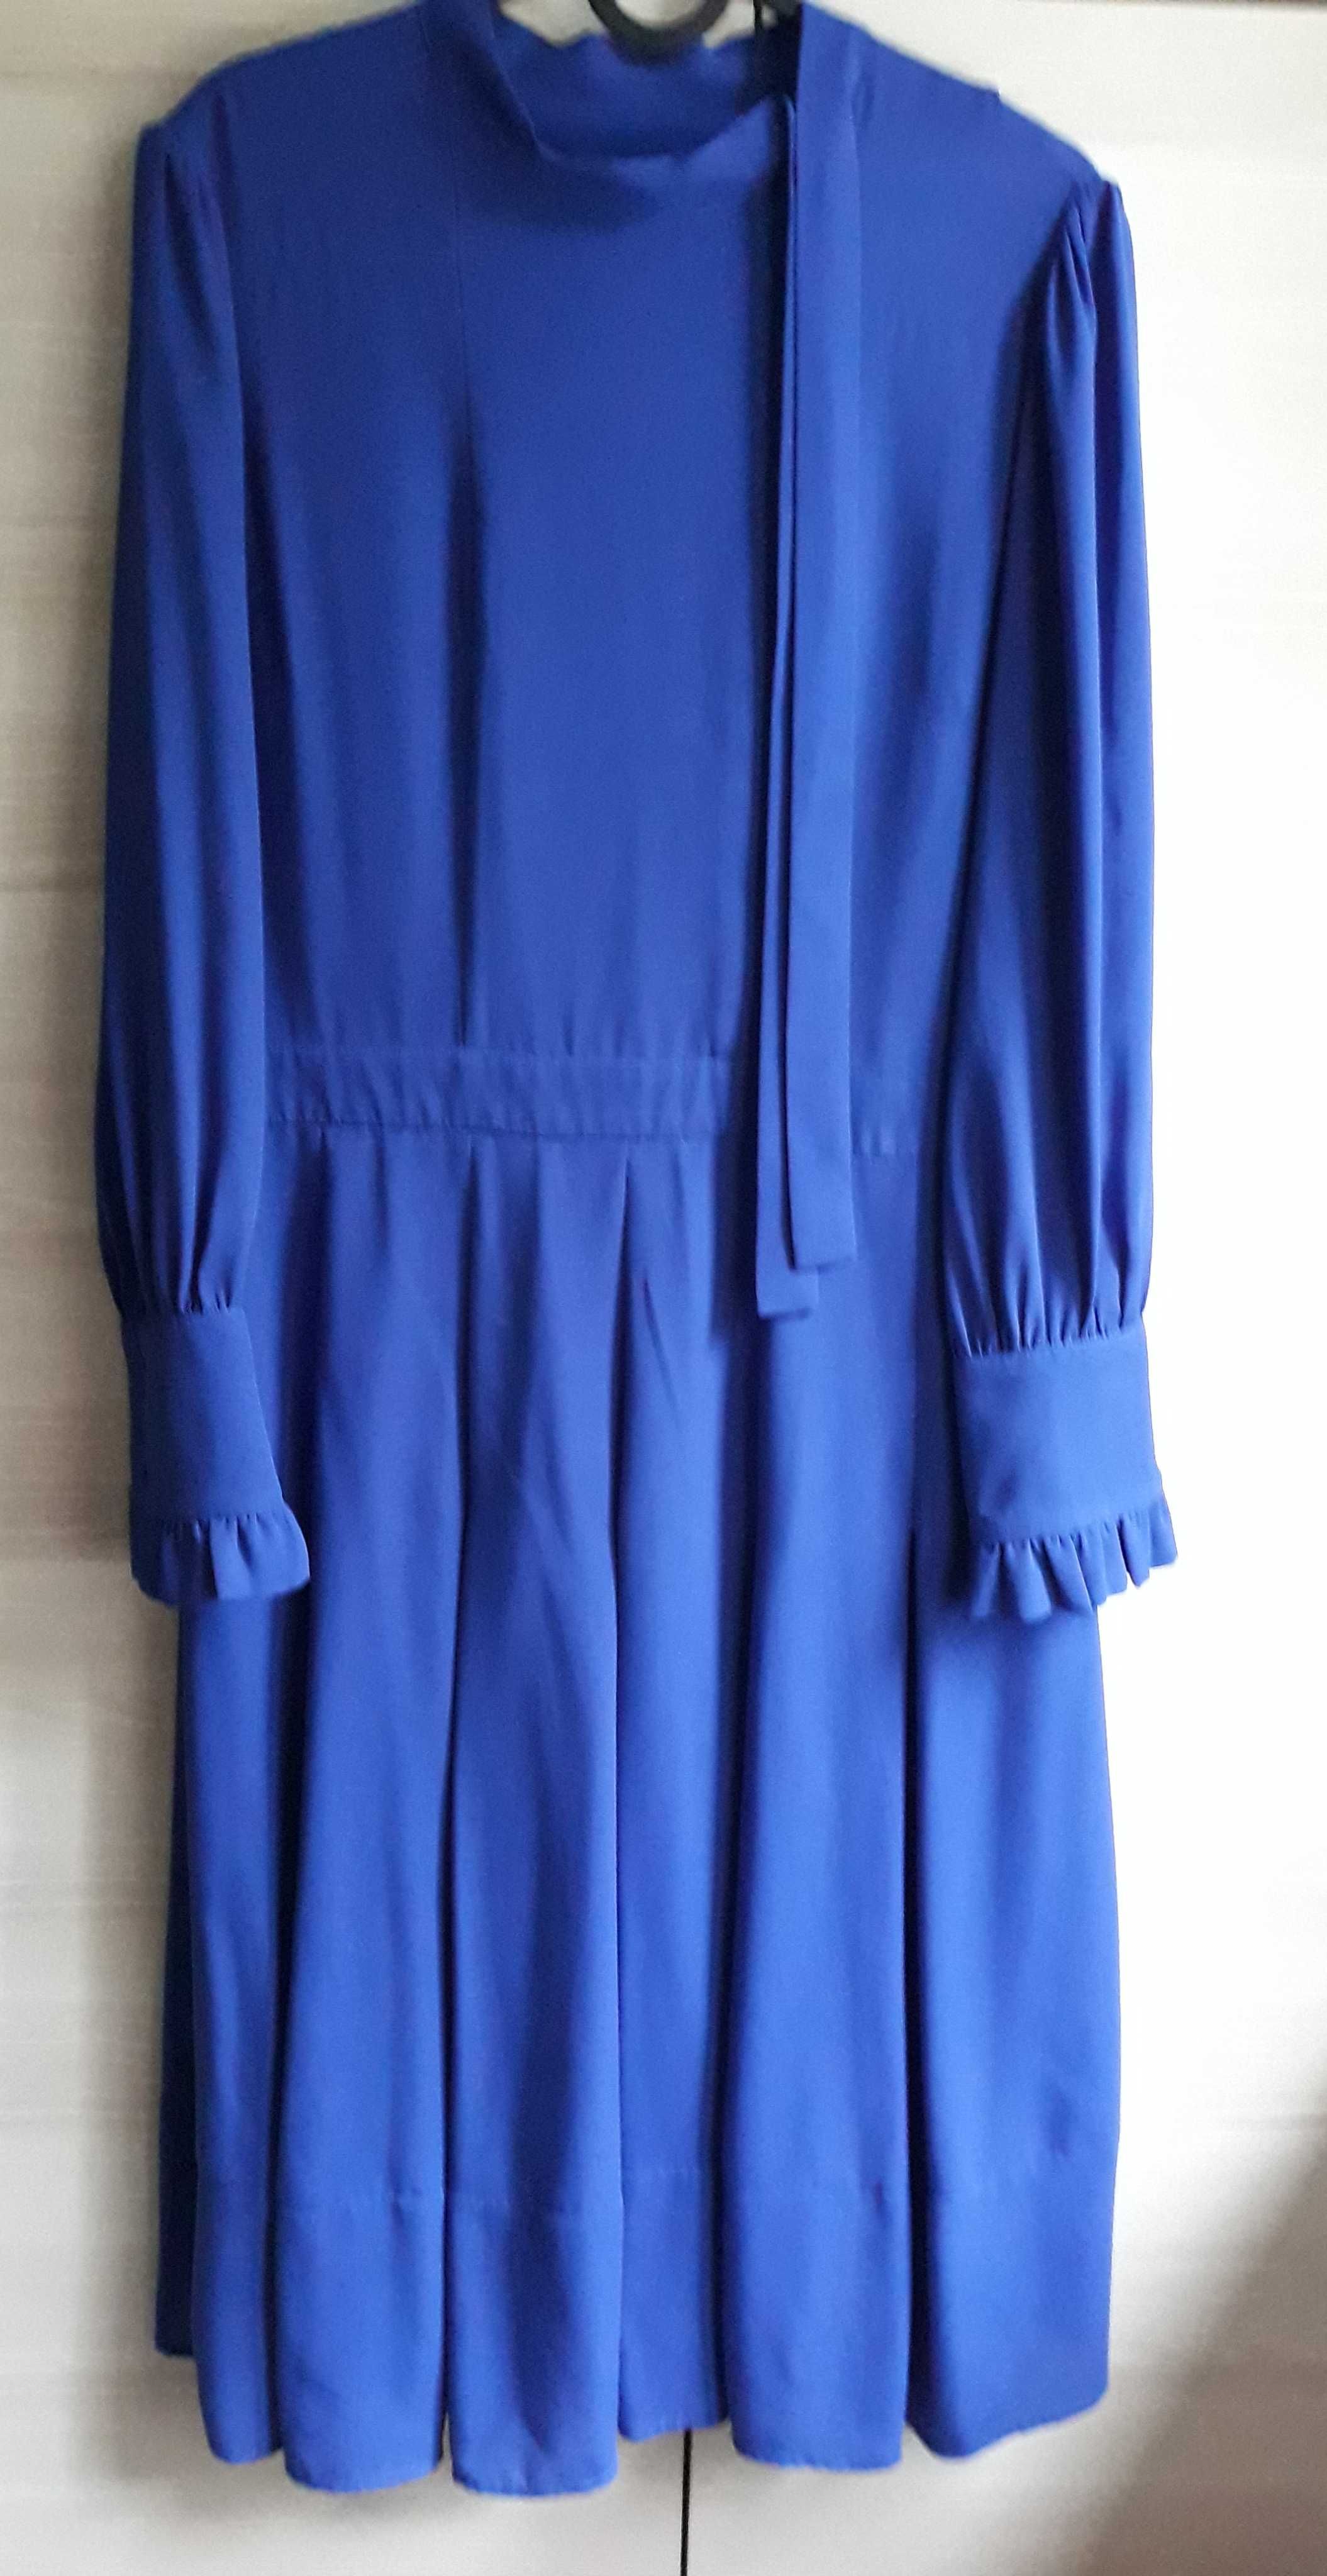 Elegancka, używana sukienka firmy Chelsea 28 - przywiezione z USA